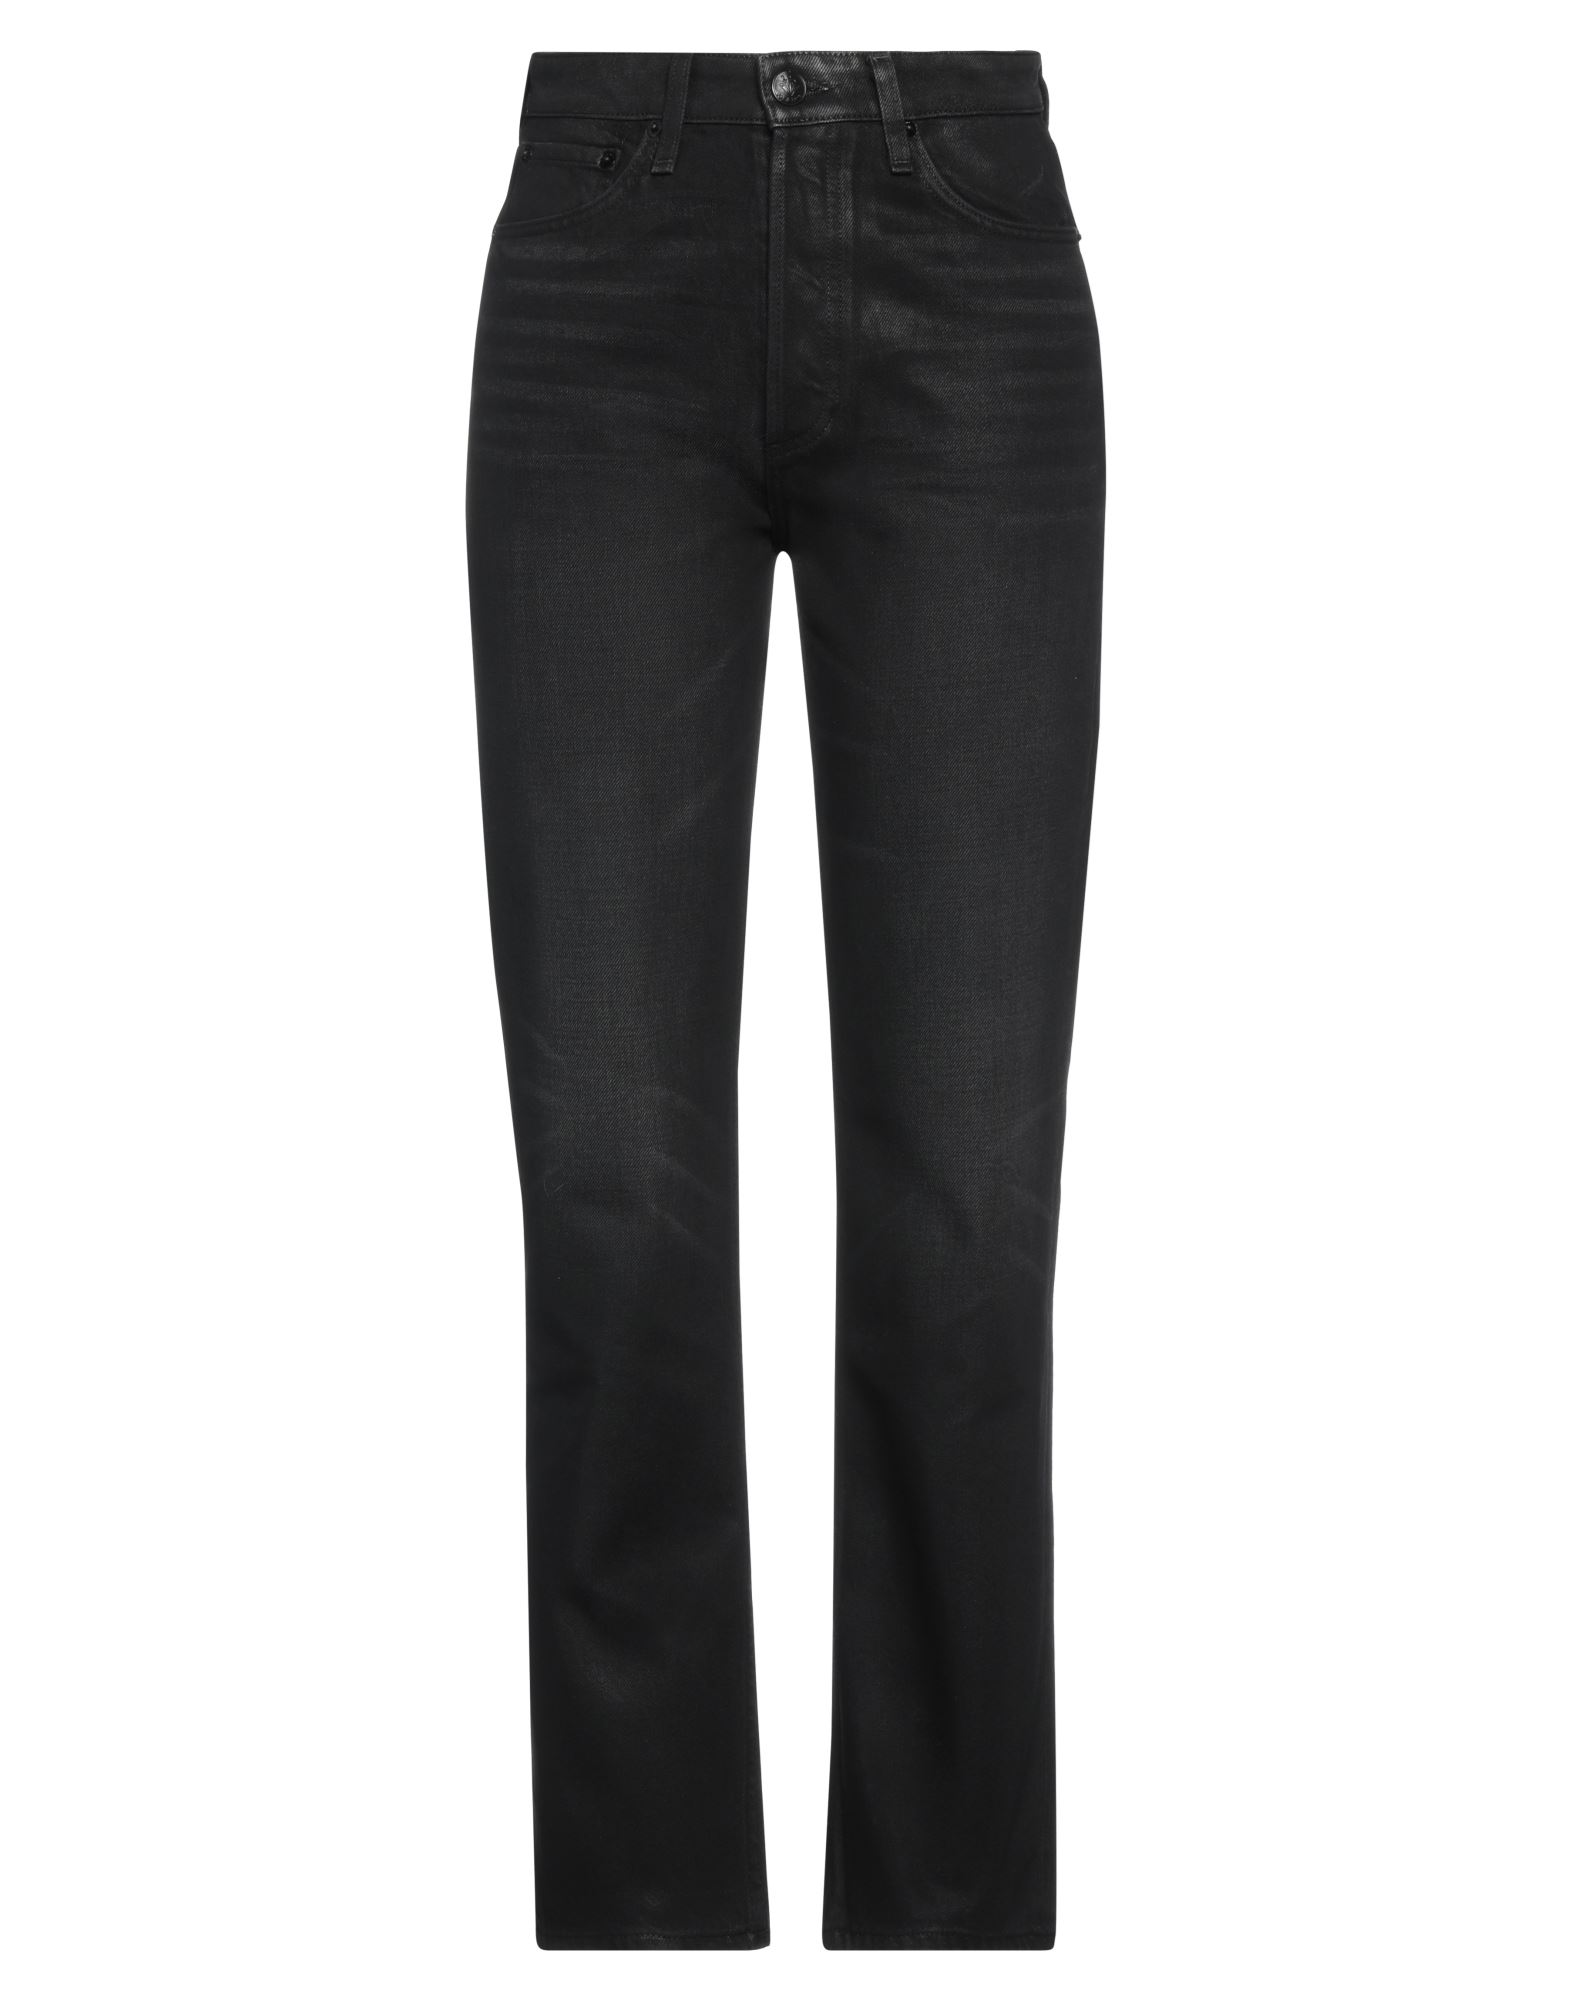 Rag & Bone Woman Jeans Black Size 31 Cotton